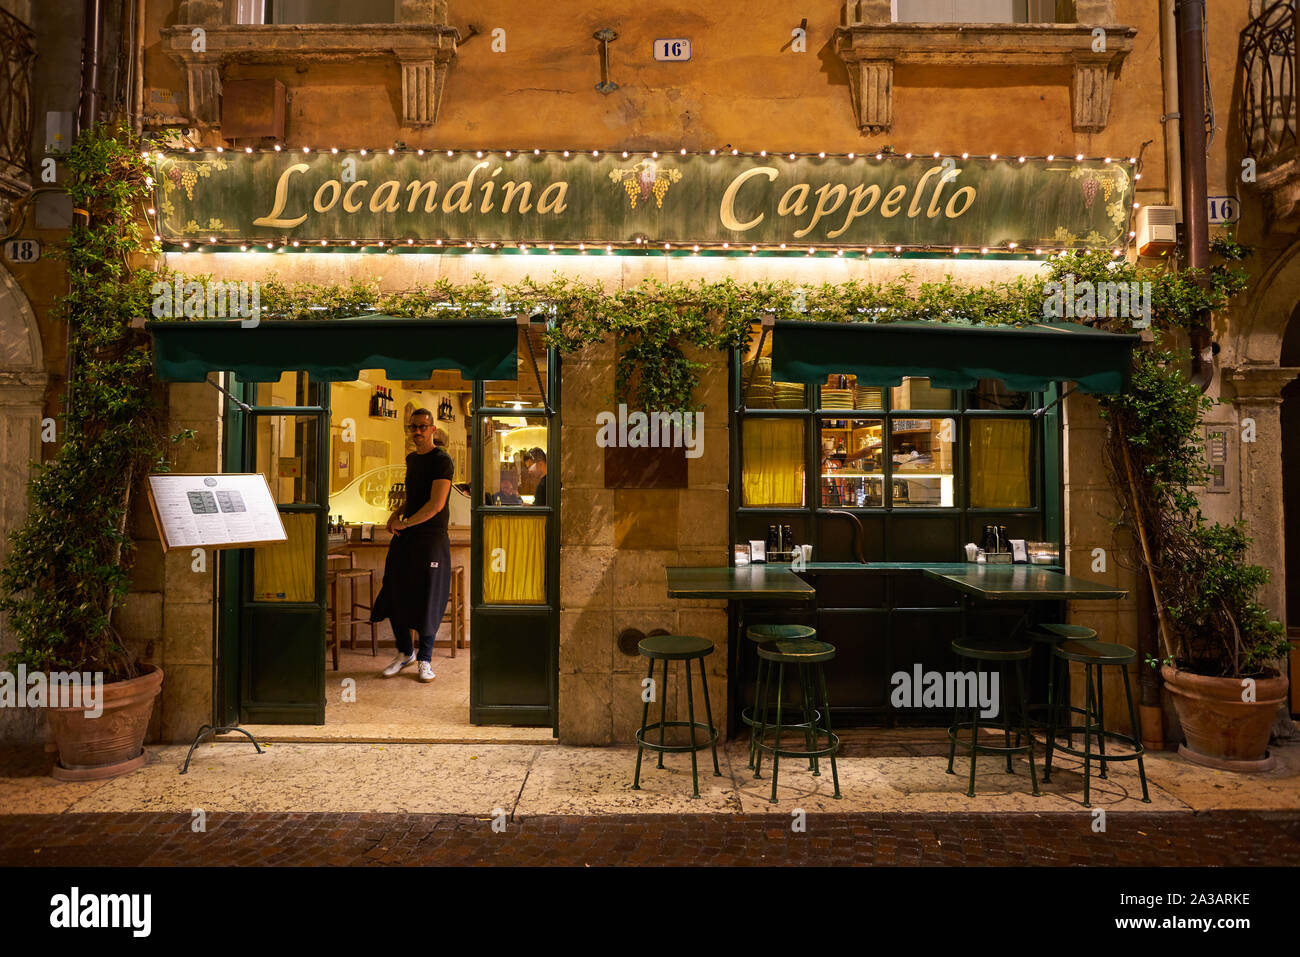 VERONA, ITALY - CIRCA MAY, 2019: entrance to Locandina Cappello restaurant  located in Verona, Italy Stock Photo - Alamy